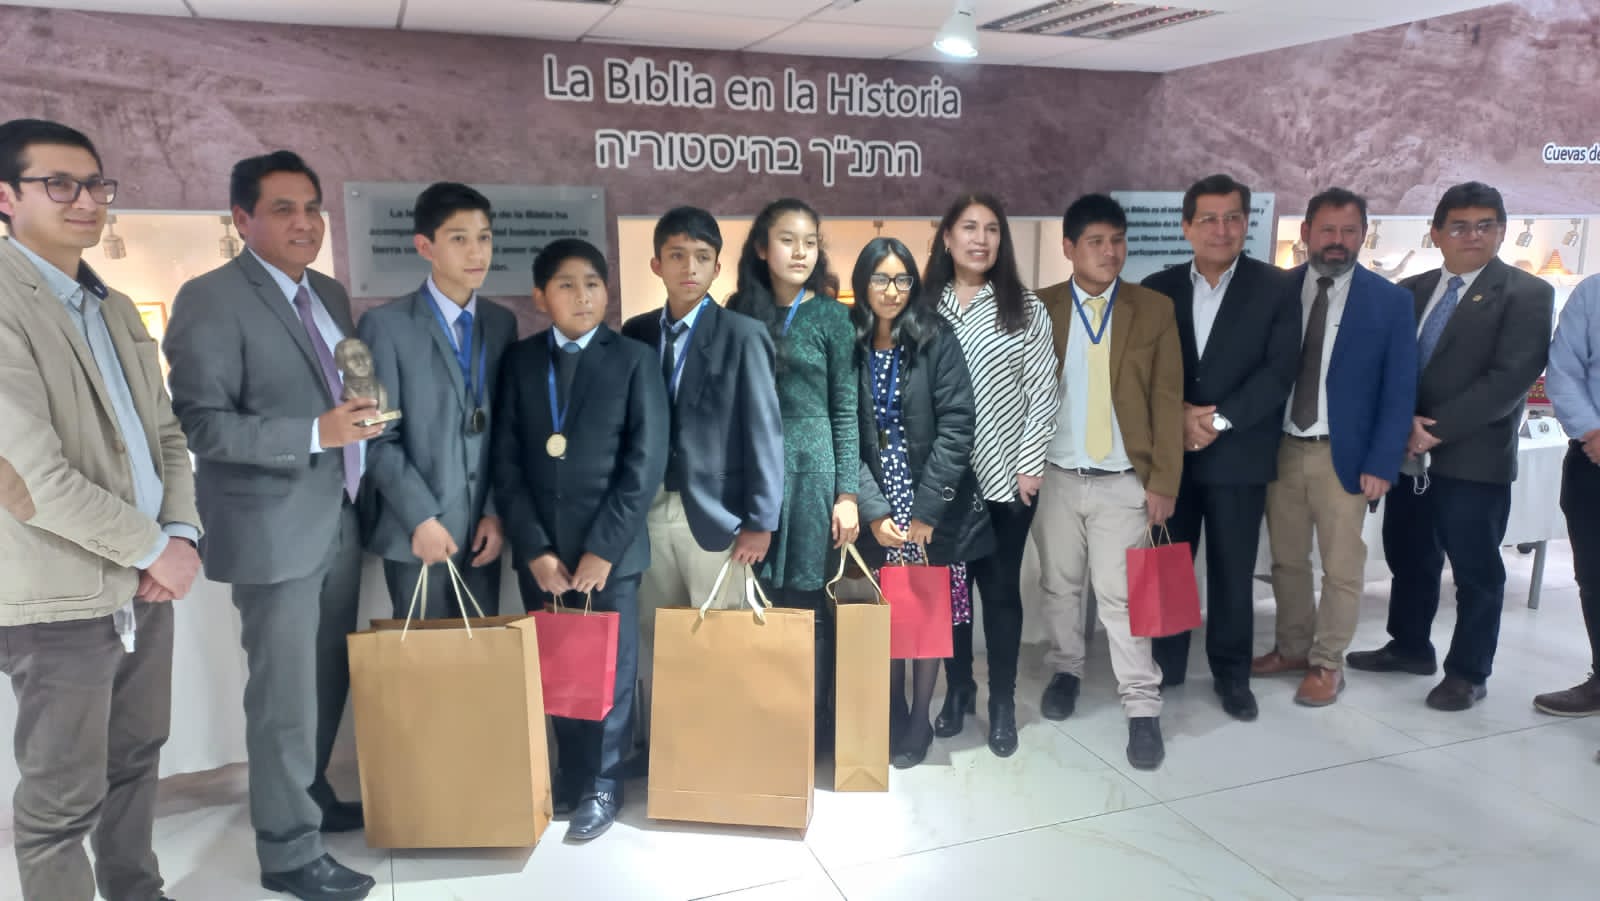 Ganadores del concurso son reconocidos y premiados por la Sociedad Bíblica Peruana.